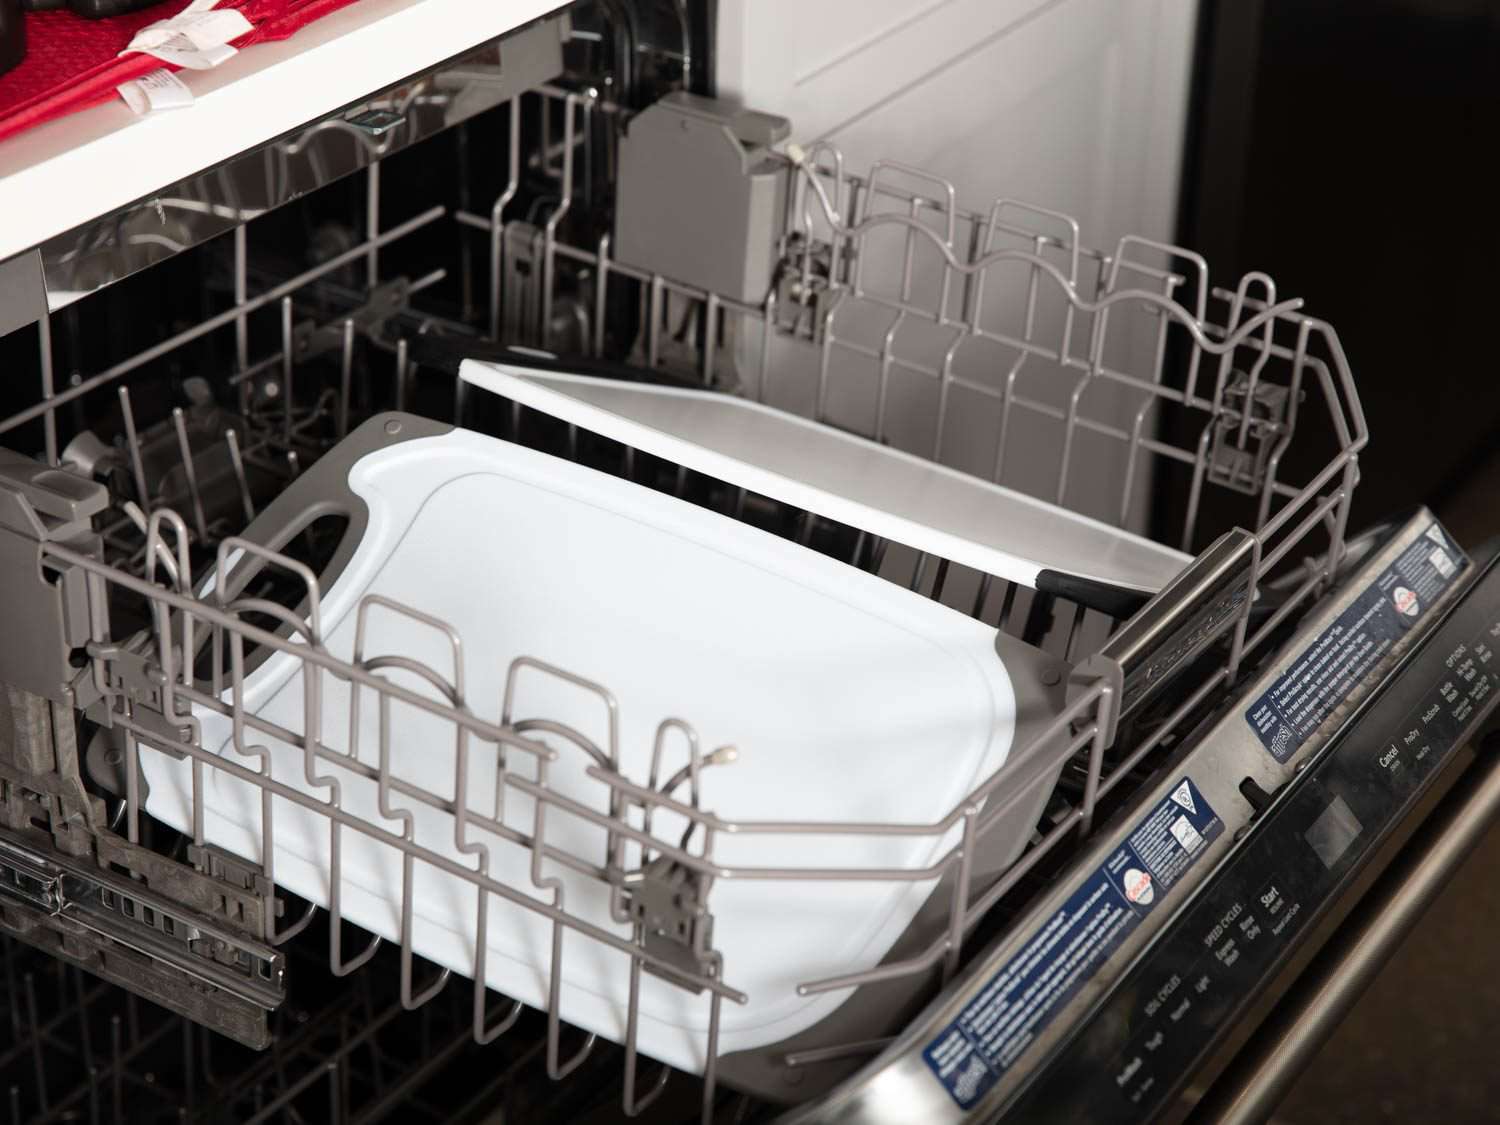 把切菜板放进洗碗机就是在测试他们声称的洗碗机安全。